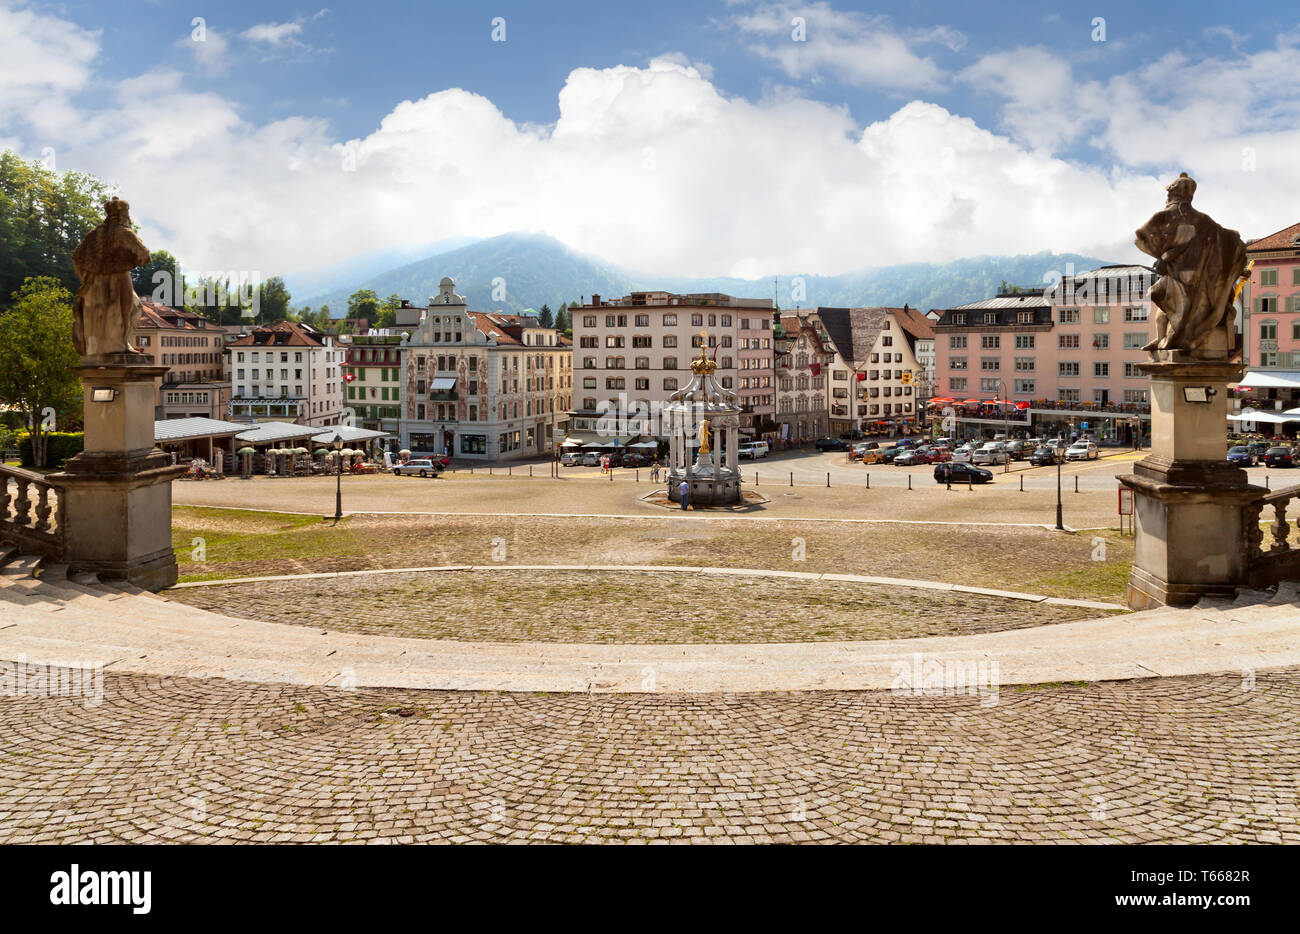 Einsiedeln, piccola città della Svizzera. Luogo di pellegrinaggio. Foto Stock